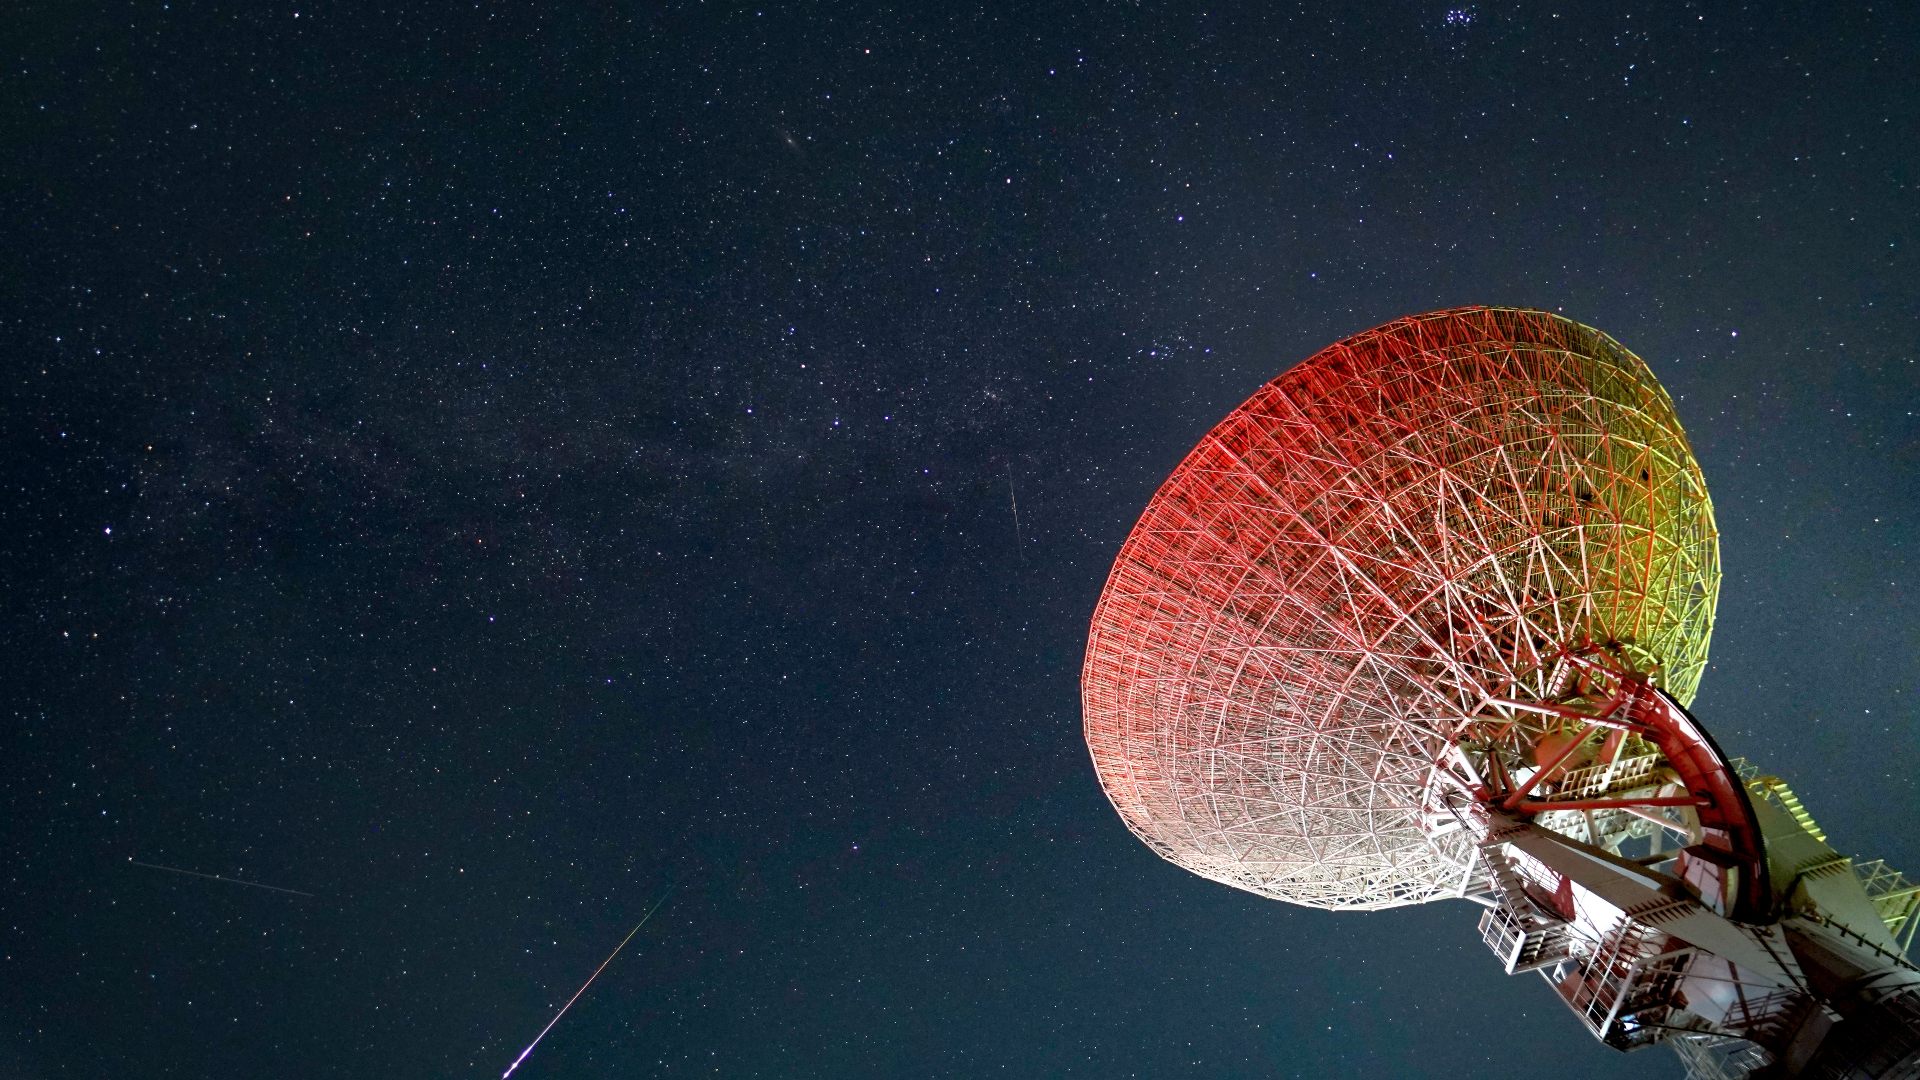 Luminose meteore prussiane attraversano il cielo stellato con la grande parabola del telescopio a destra dell'immagine.